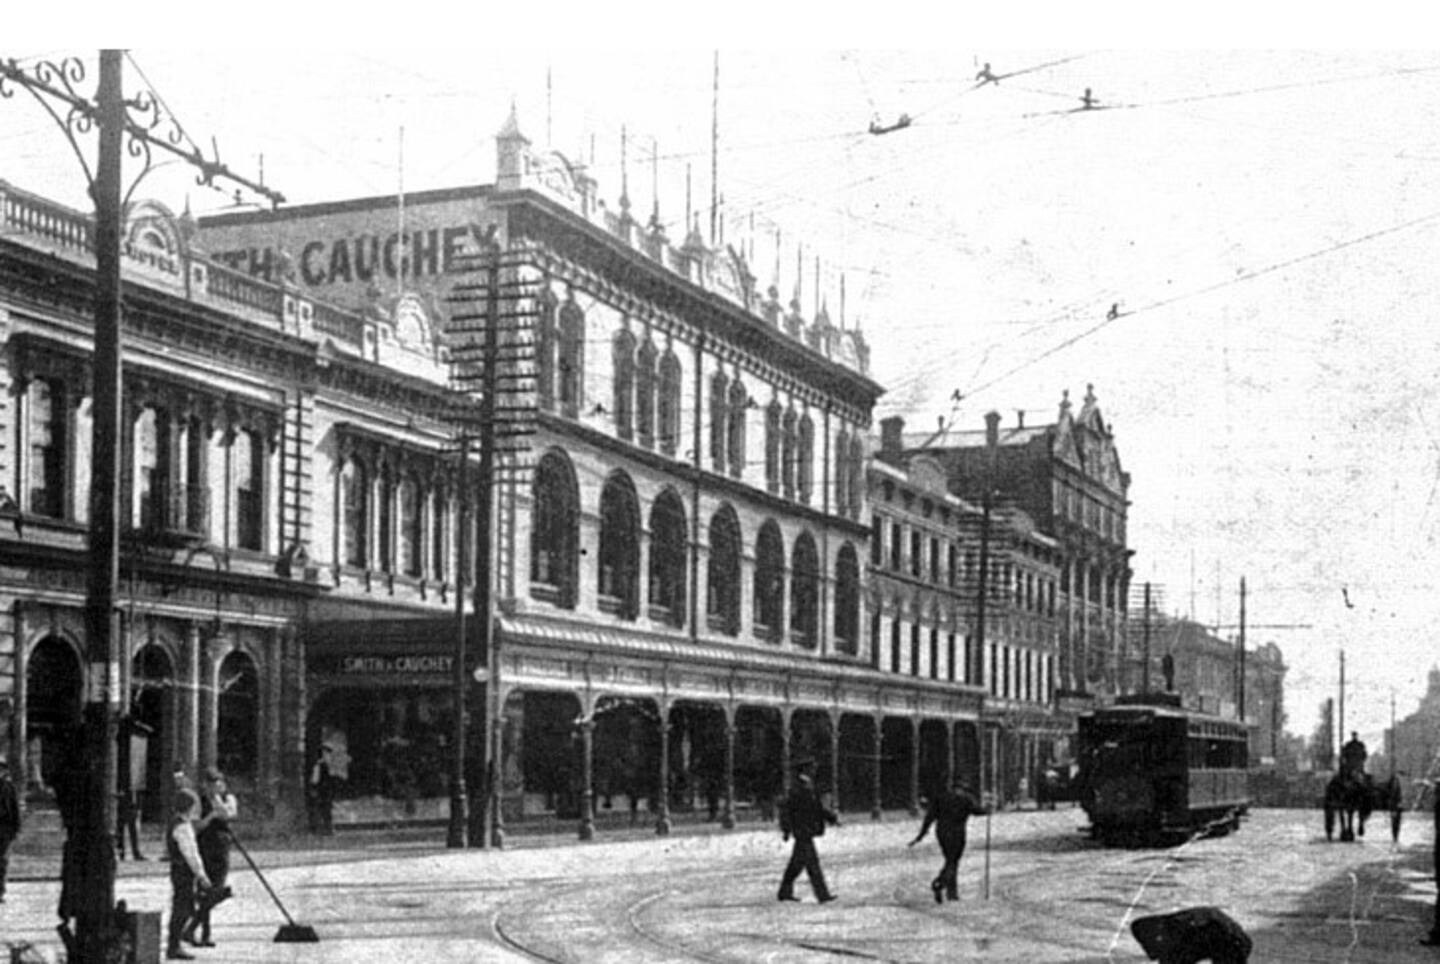 皇后街 Smith & Caughey 百货商店的早期照片。